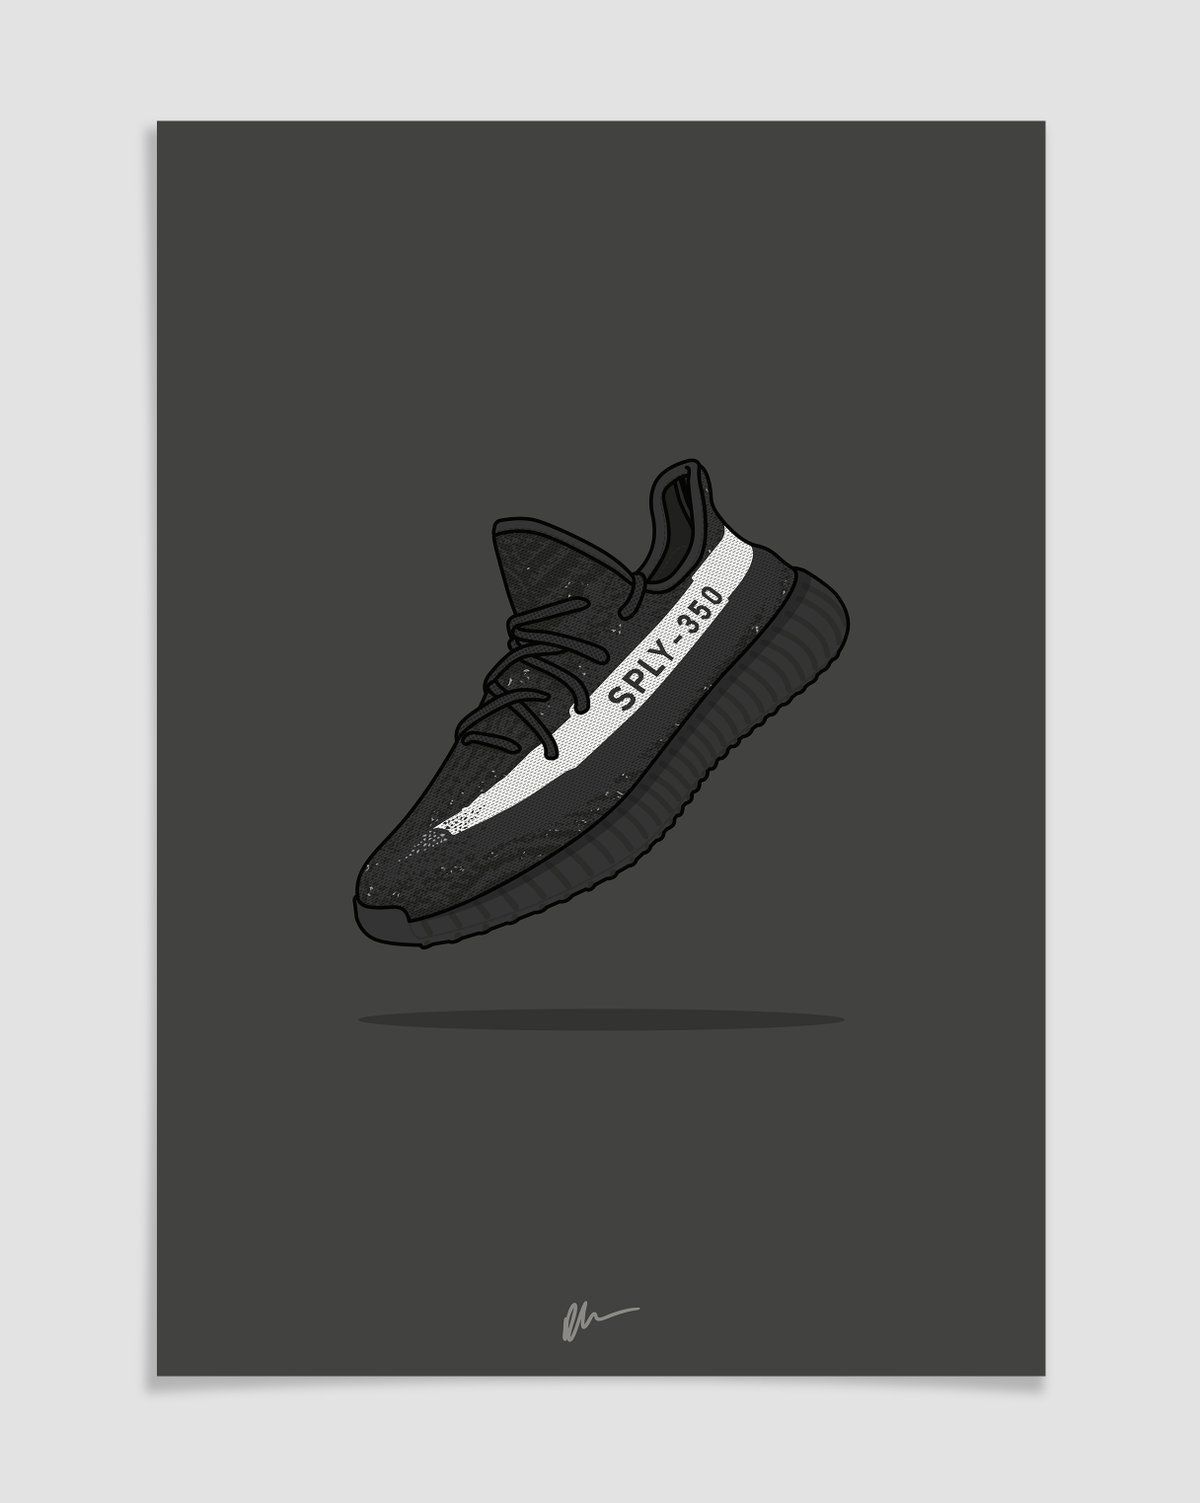 Image of Yeezy 350 v2 Black White. Shoes wallpaper, Sneakers wallpaper, Sneaker art